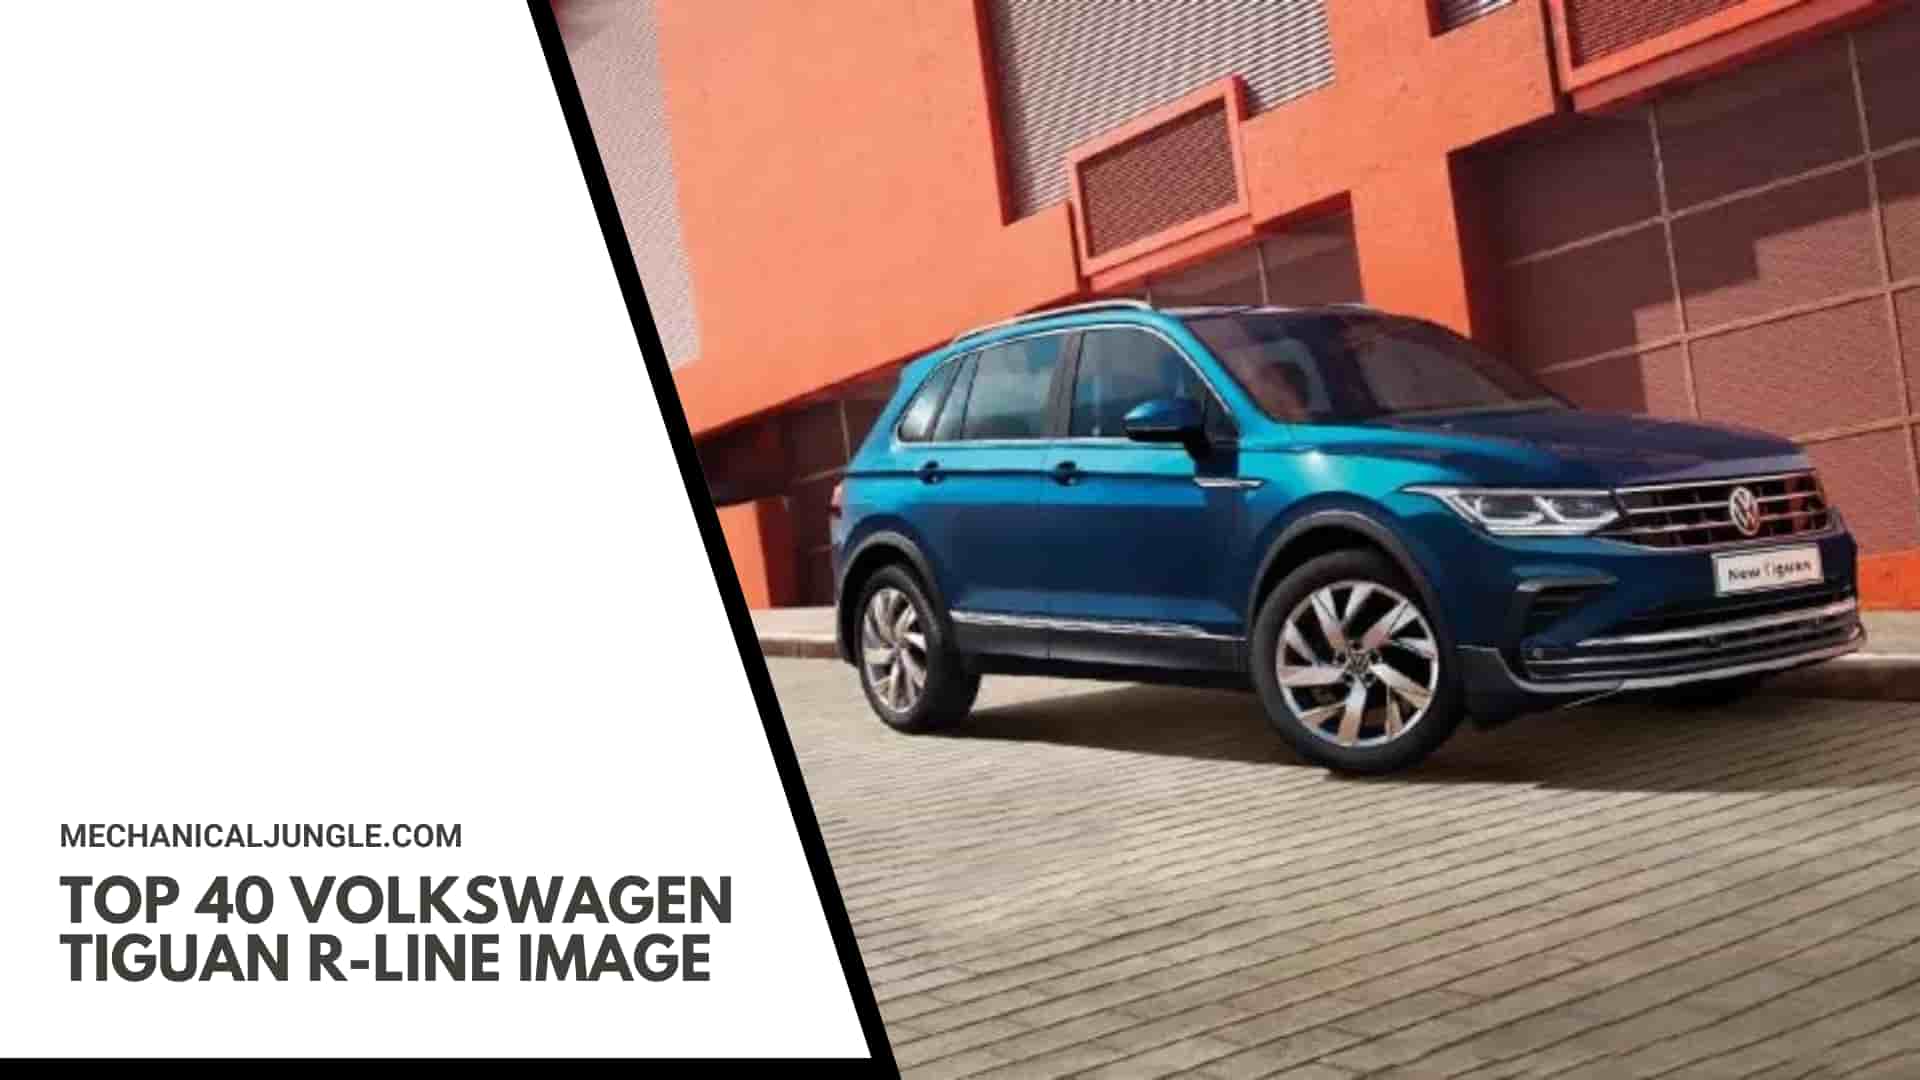 Top 40 Volkswagen Tiguan R-Line Image